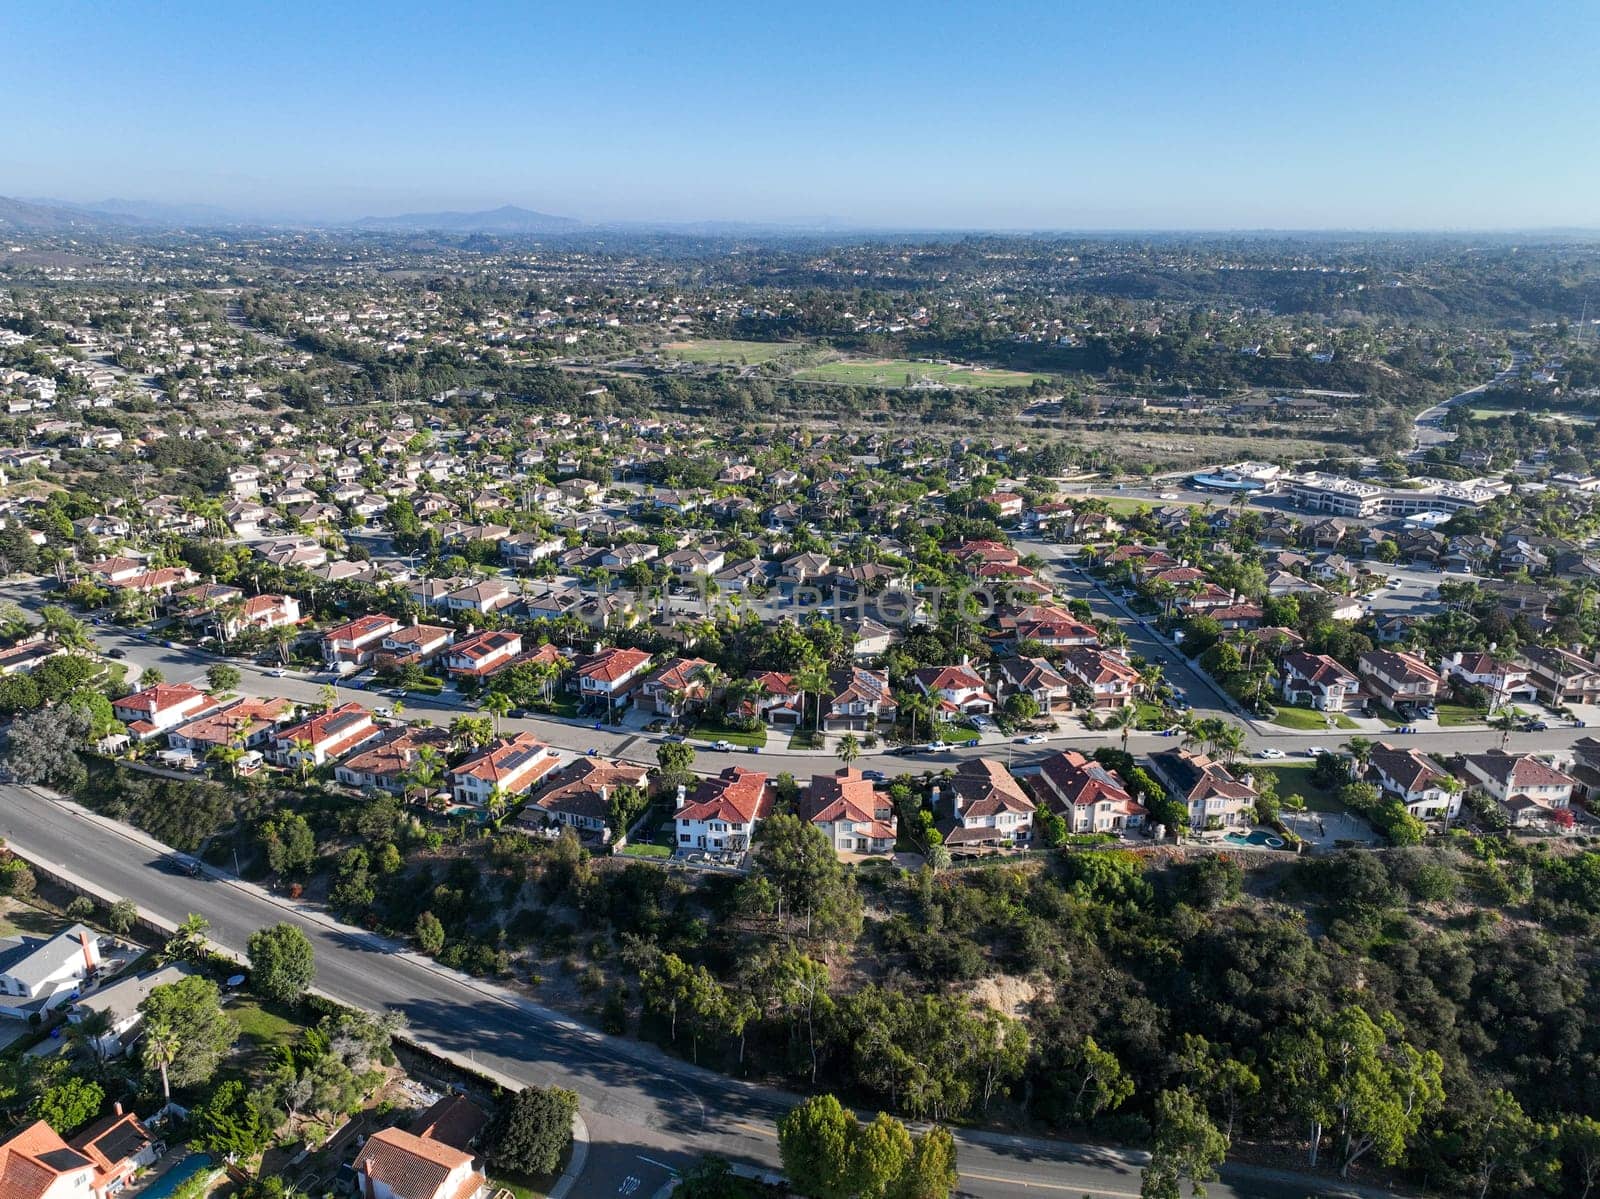 Aerial view of houses in Vista in San Diego Carlsbad by Bonandbon